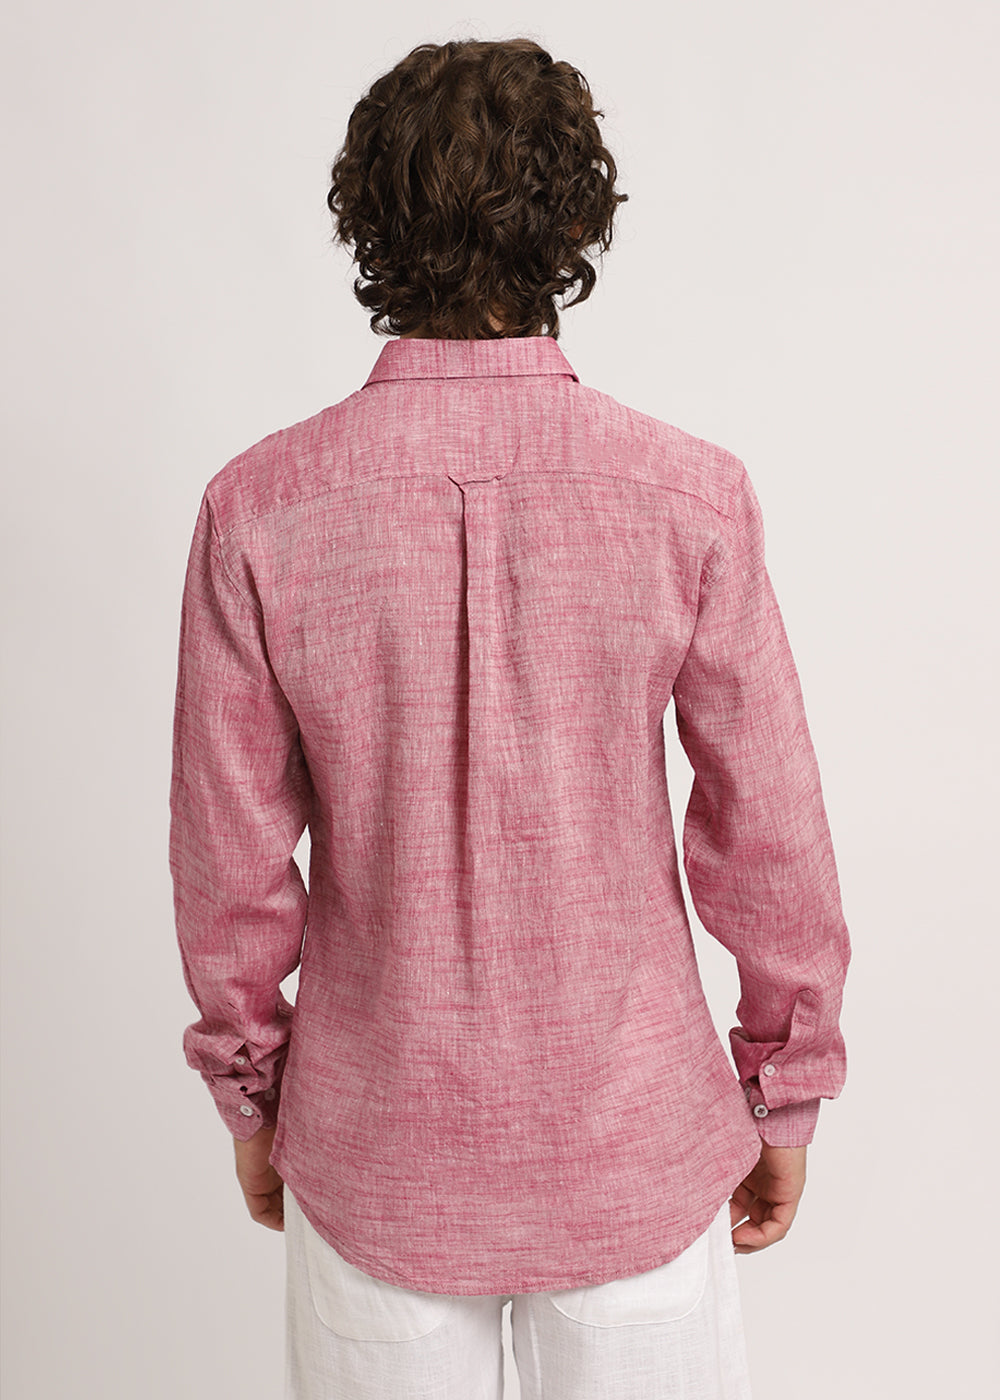 Coral Pink Linen Shirt